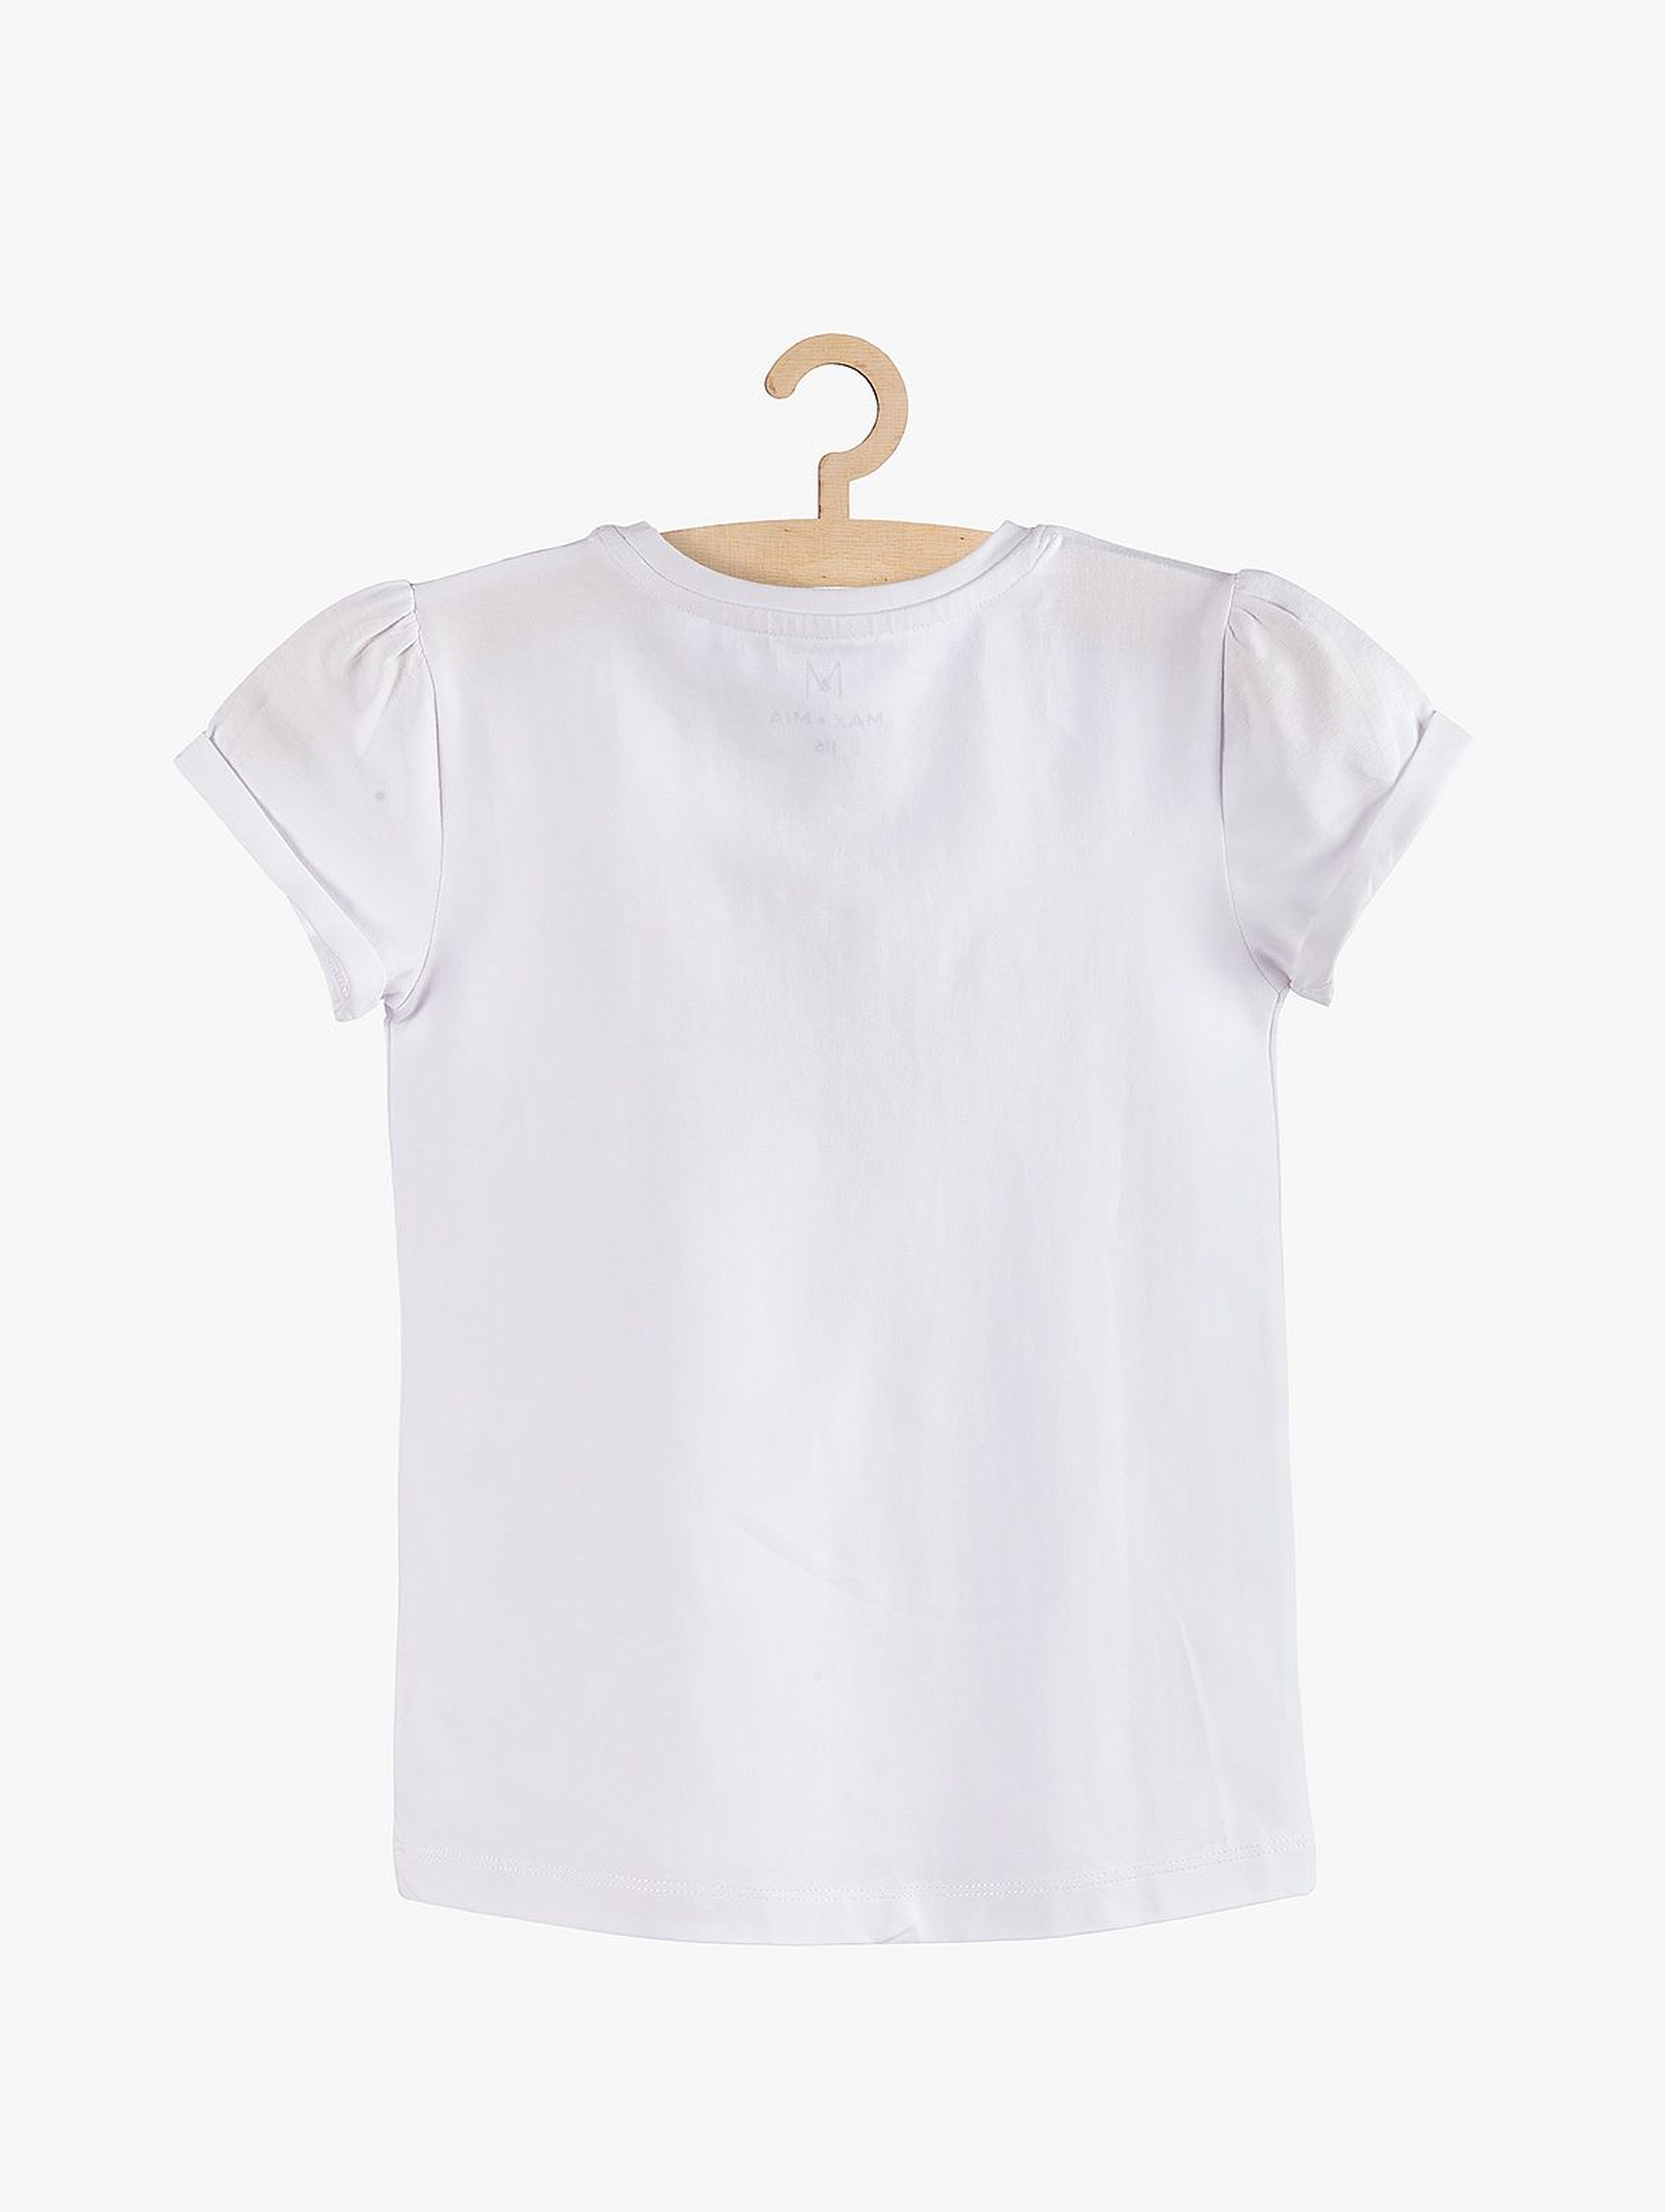 Elegancki t-shirt dla dziewczynki z aplikację 3D- biały